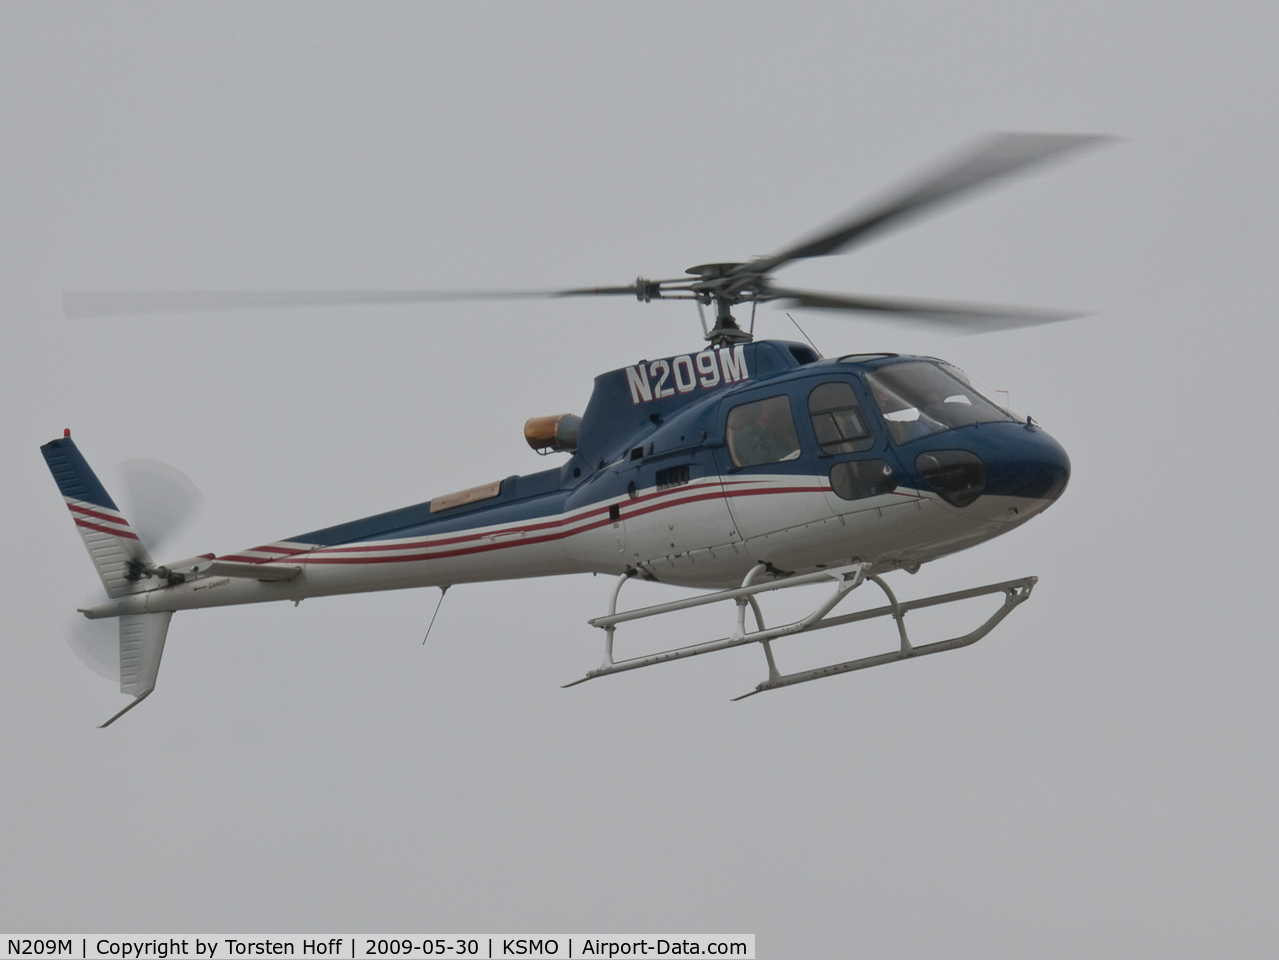 N209M, 2005 Eurocopter AS-350B-3 Ecureuil Ecureuil C/N 3981, N209M departing from RWY 03